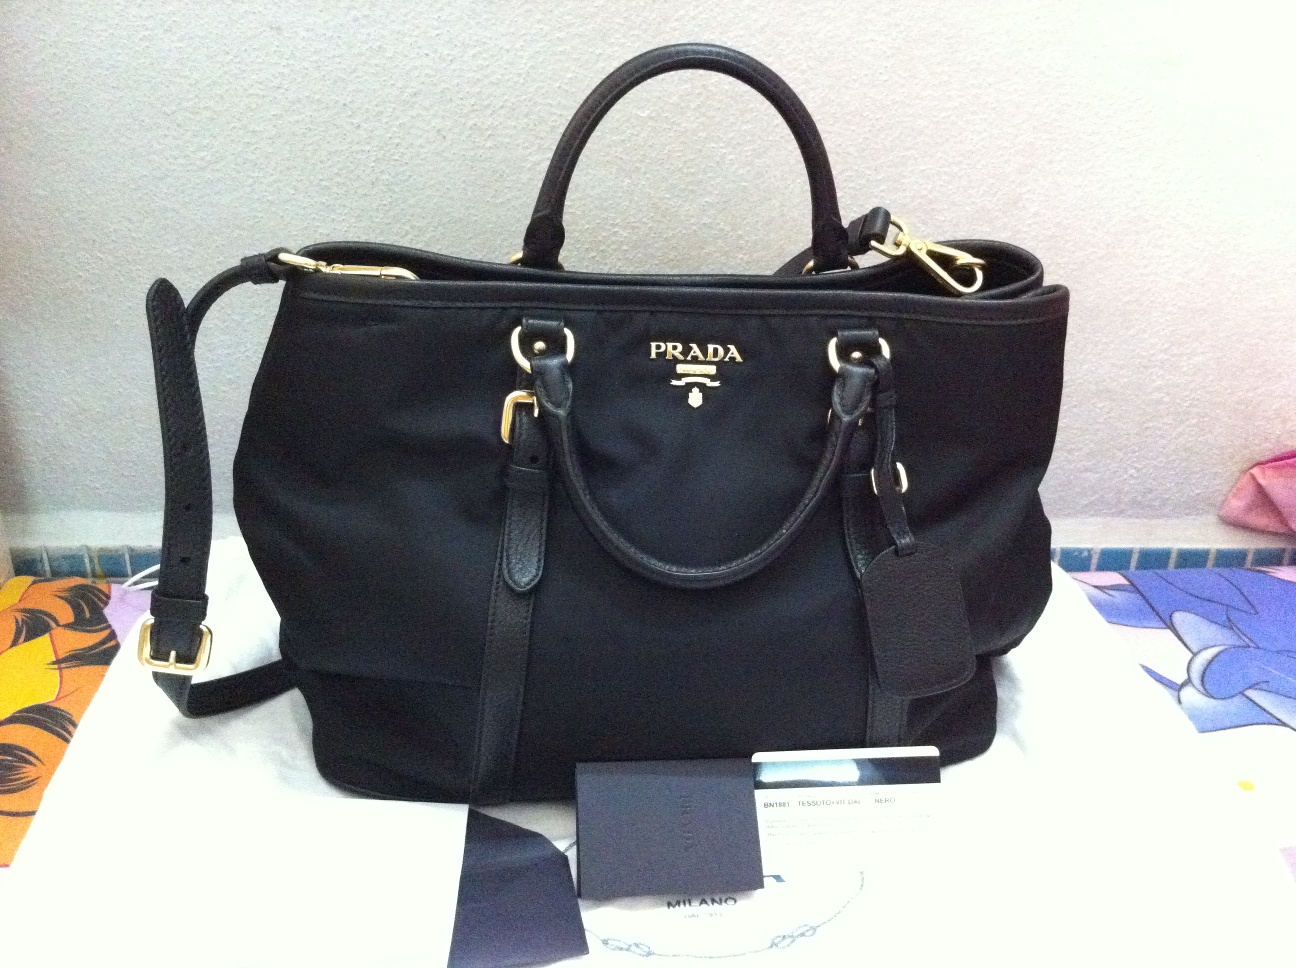 Now for Authentic Designer Handbag: PRADA